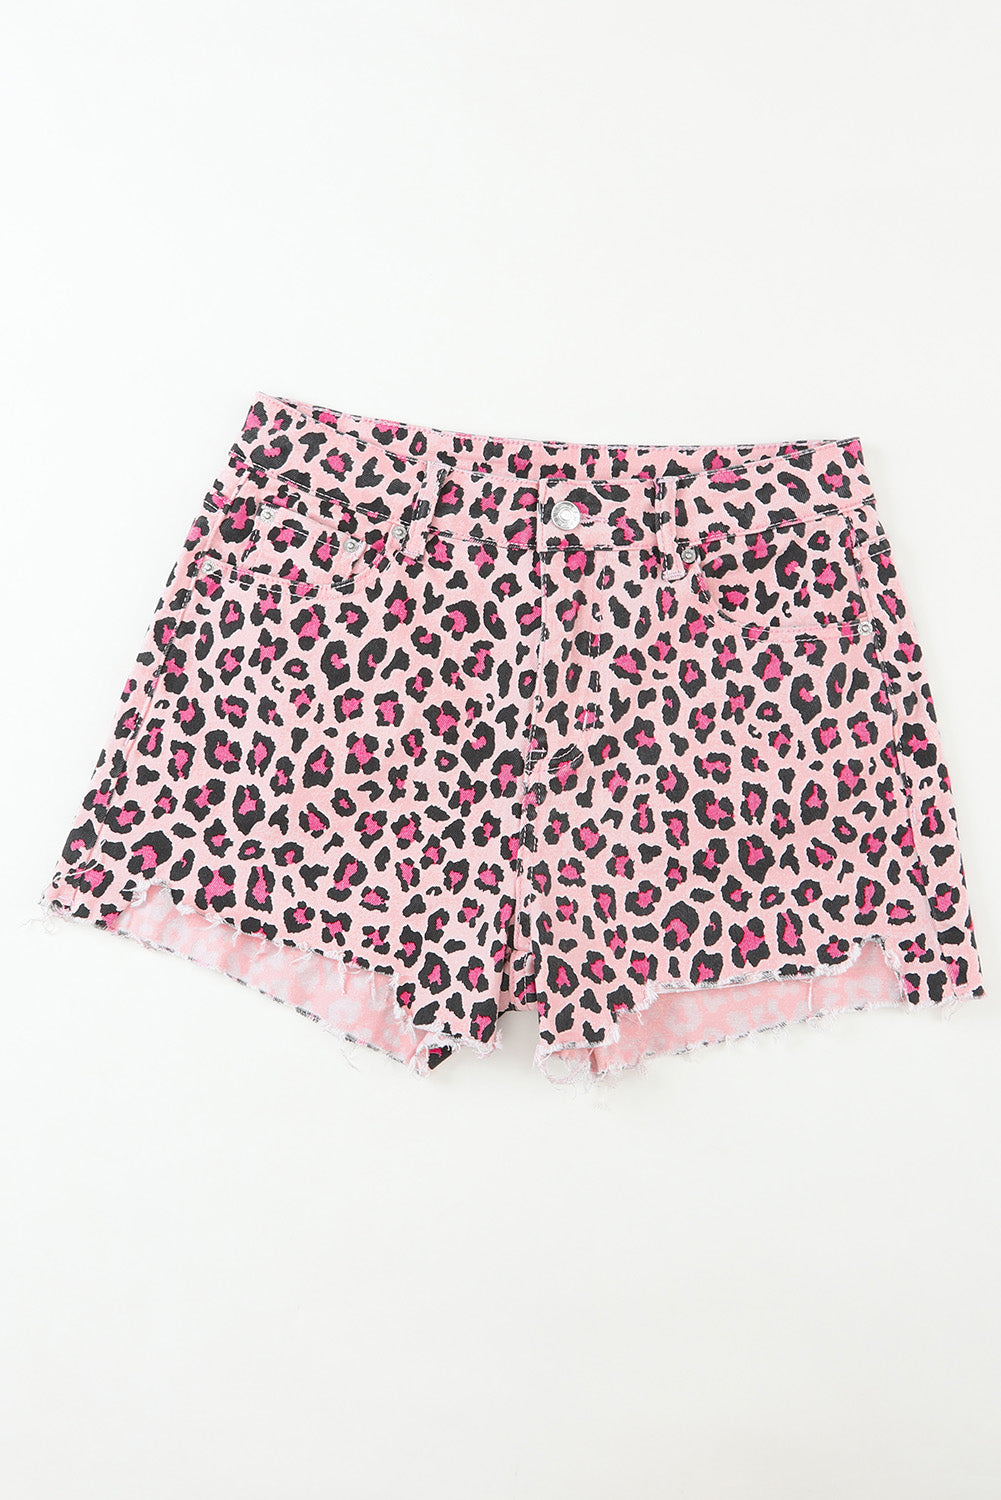 Rosa Denim-Shorts mit unbearbeitetem Saum und Leopardenmuster